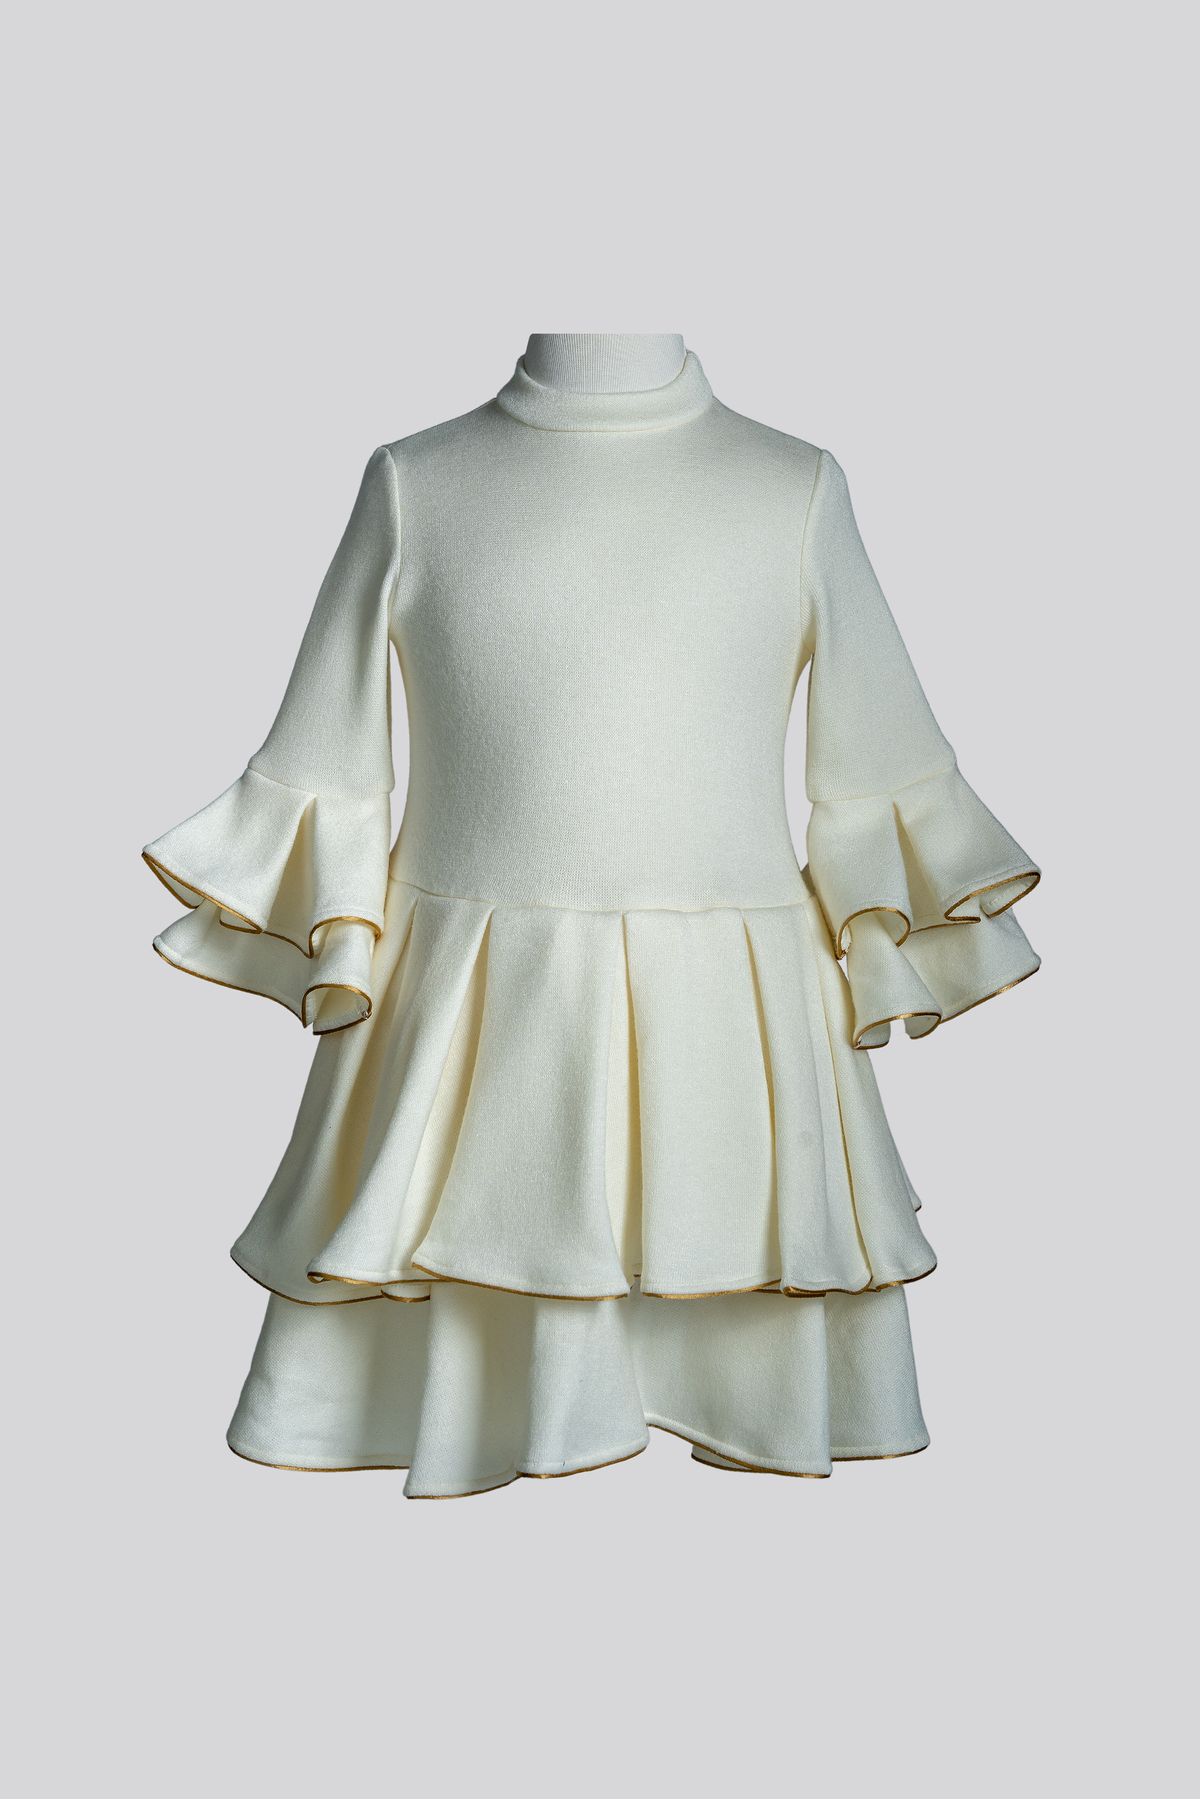 Augie Leauphant Beyaz Altın Biyeli Elbise